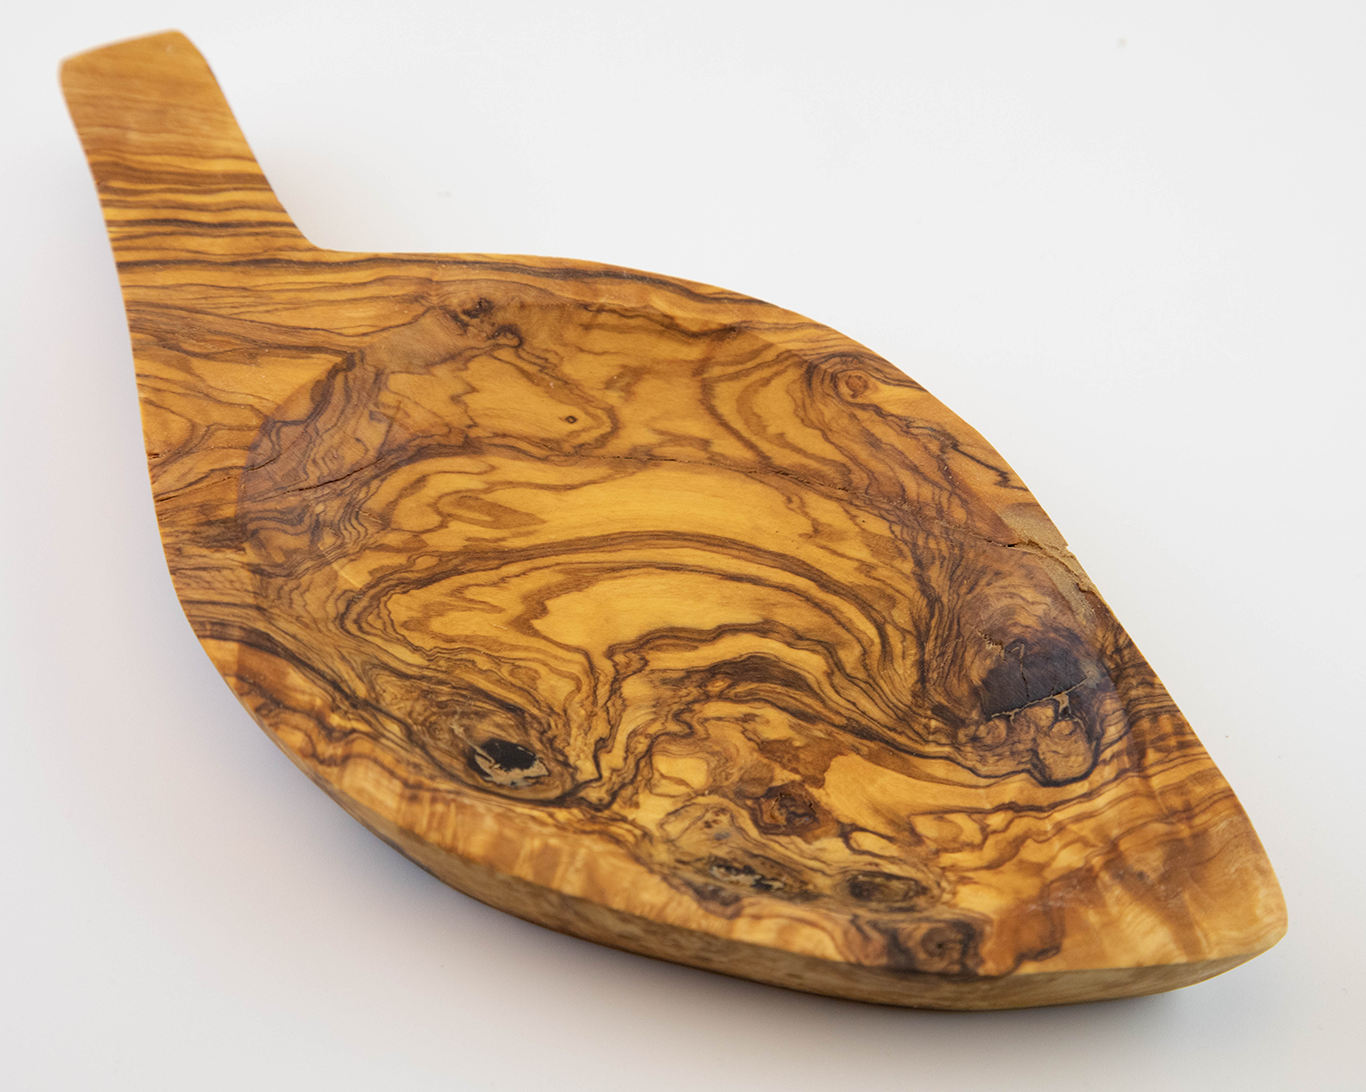 Plato de madera de olivo en diseño de hoja de 22x10 cm.